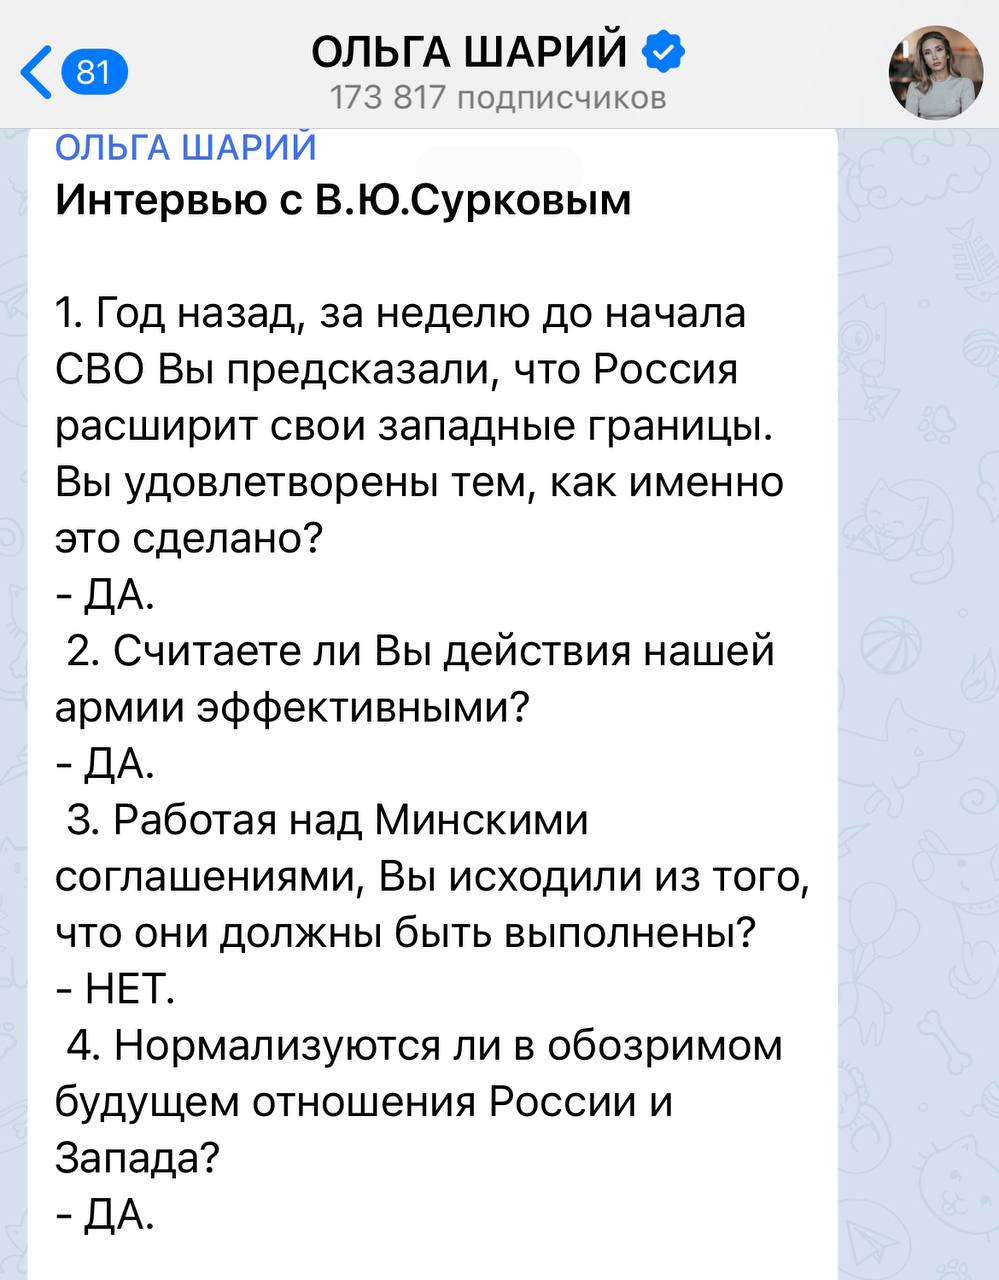 Труха телеграмм украина на русском языке смотреть онлайн бесплатно фото 14